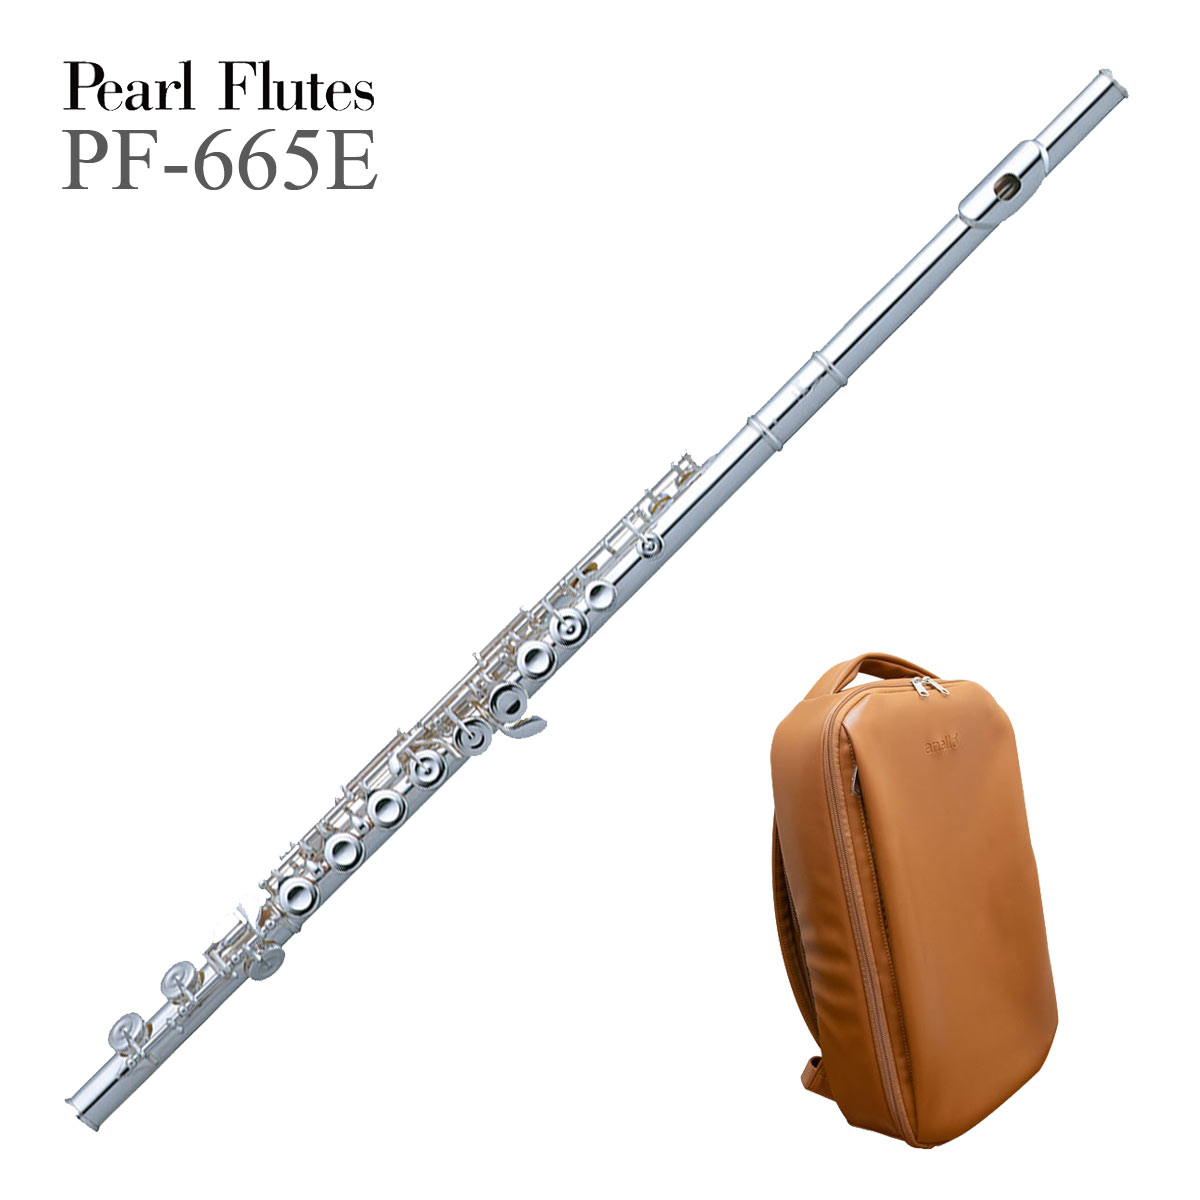 Pearl Flute / PF-665E パール フルート 頭部管銀製 【アネロ×パールコラボバッグセット】《5年保証》 | イシバシ楽器